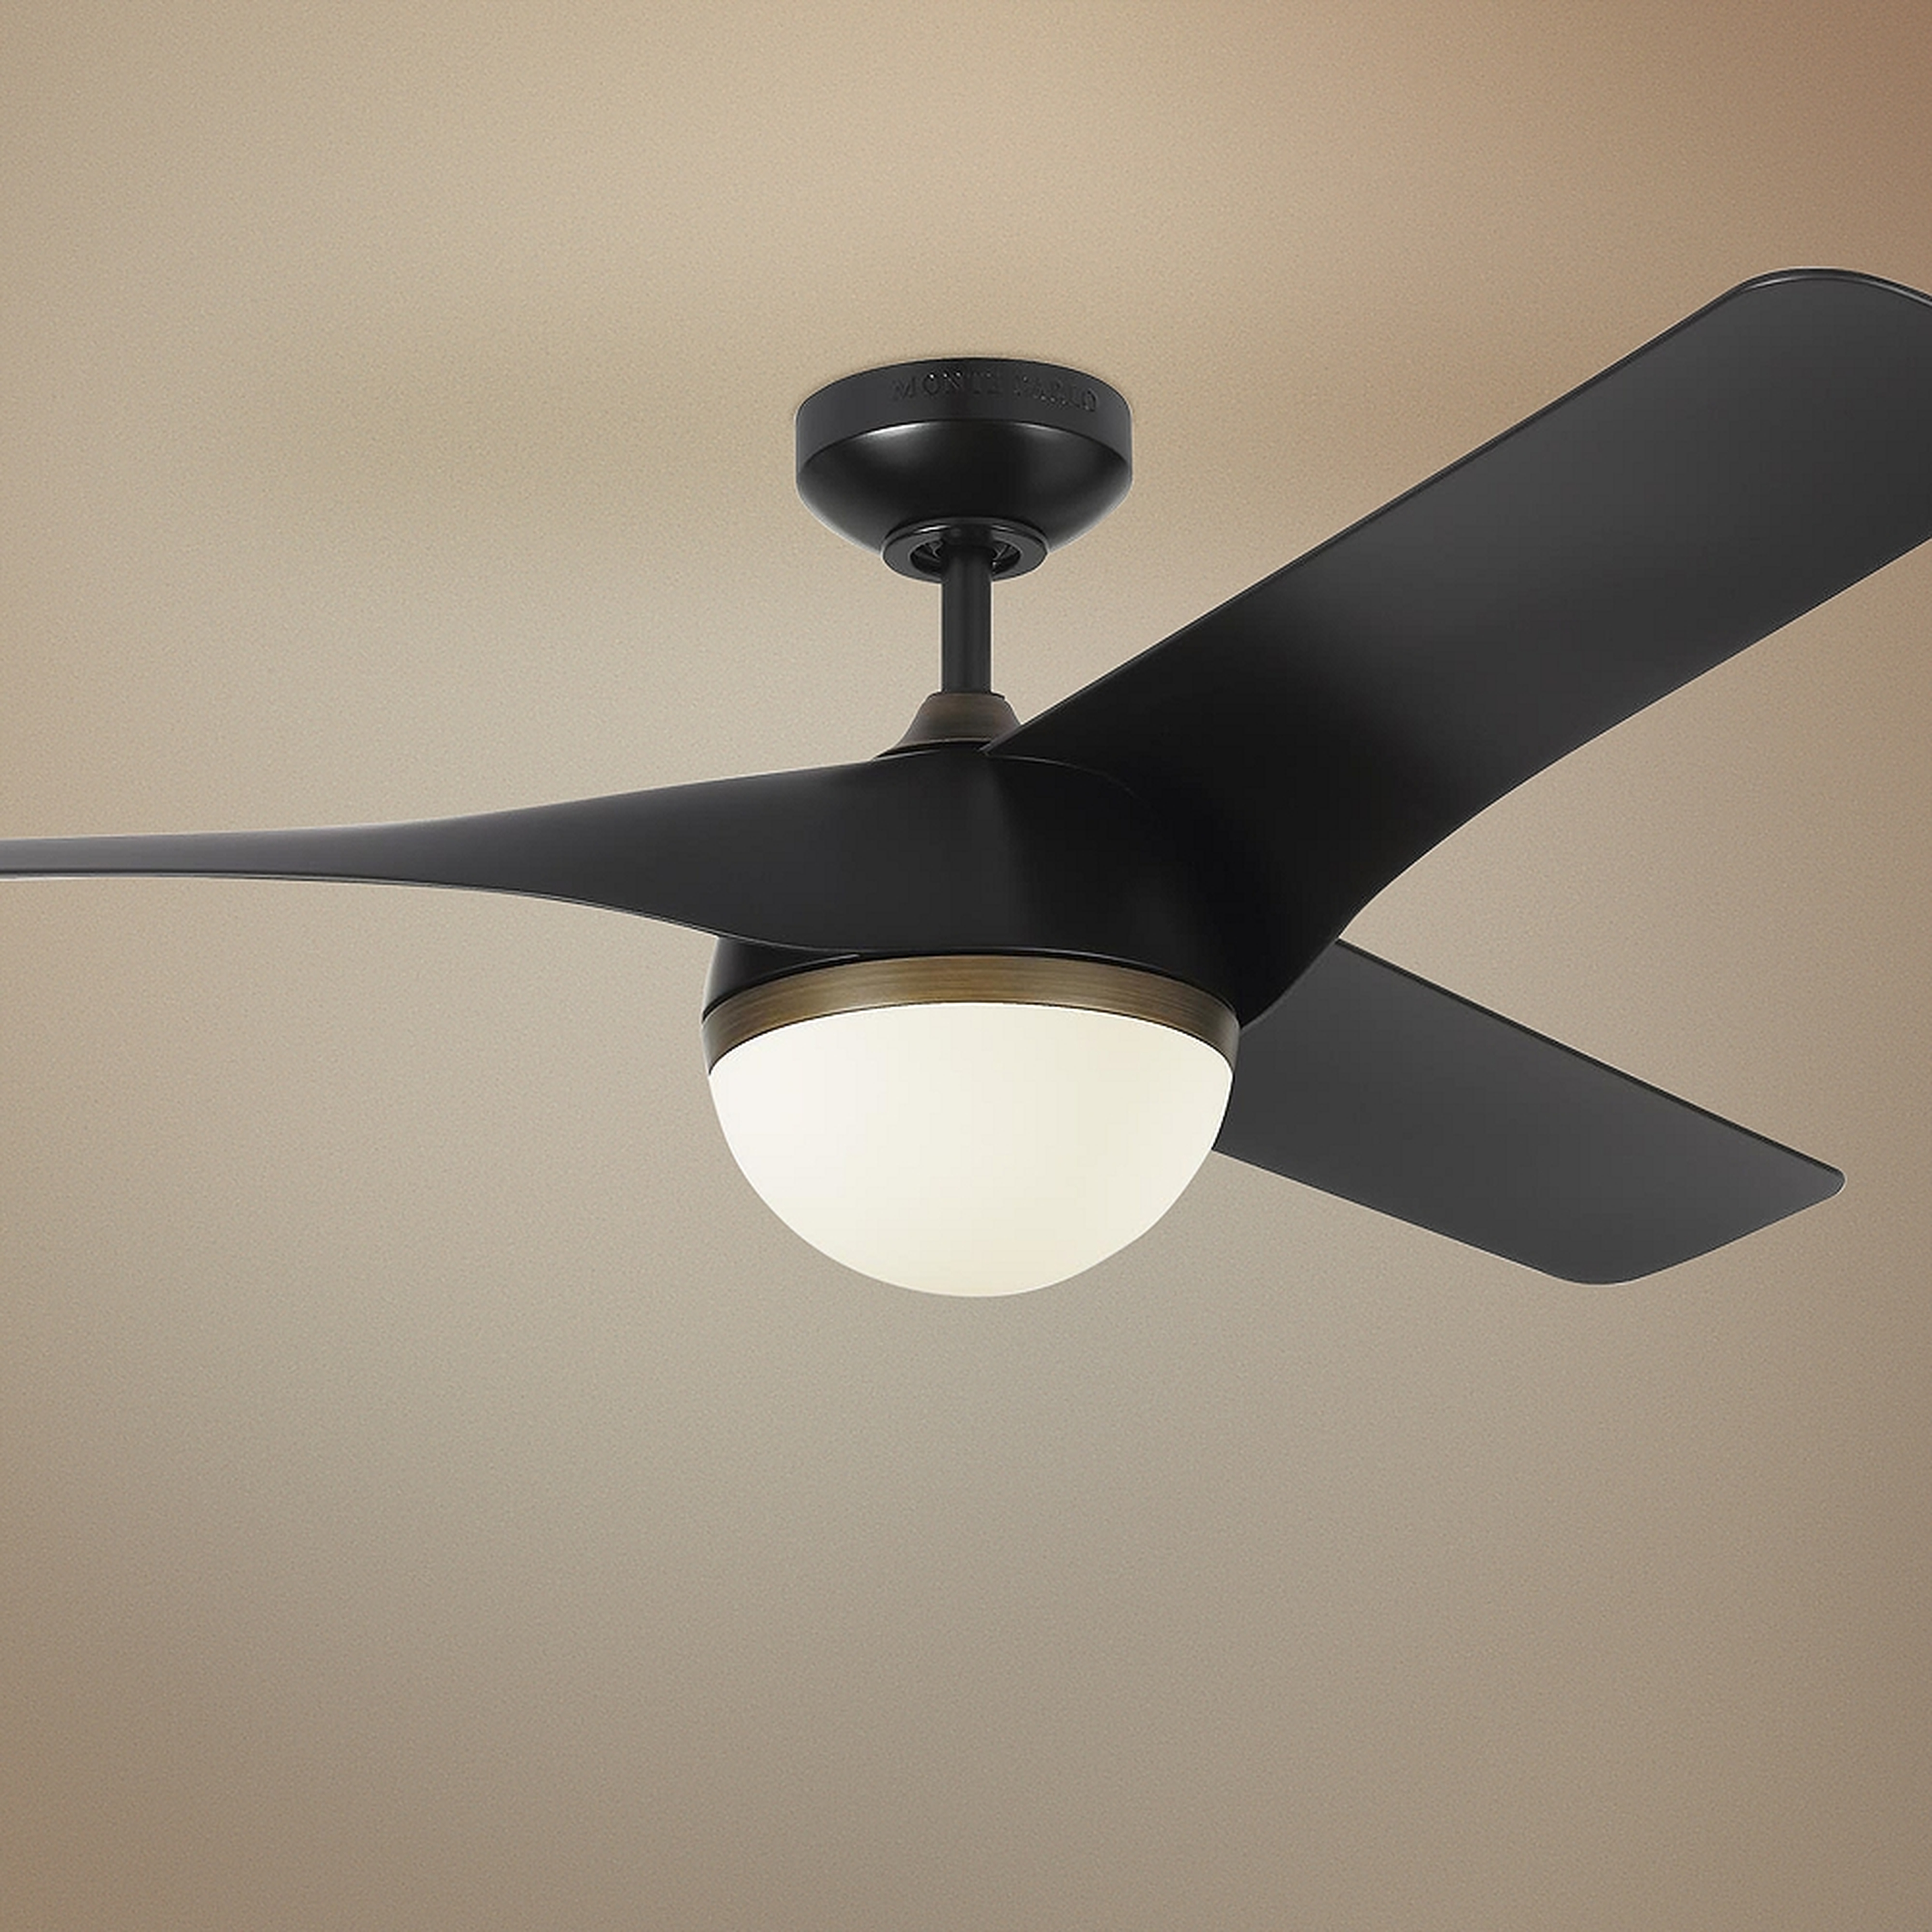 56" Monte Carlo Akova Matte Black LED Ceiling Fan - Style # 67P75 - Lamps Plus